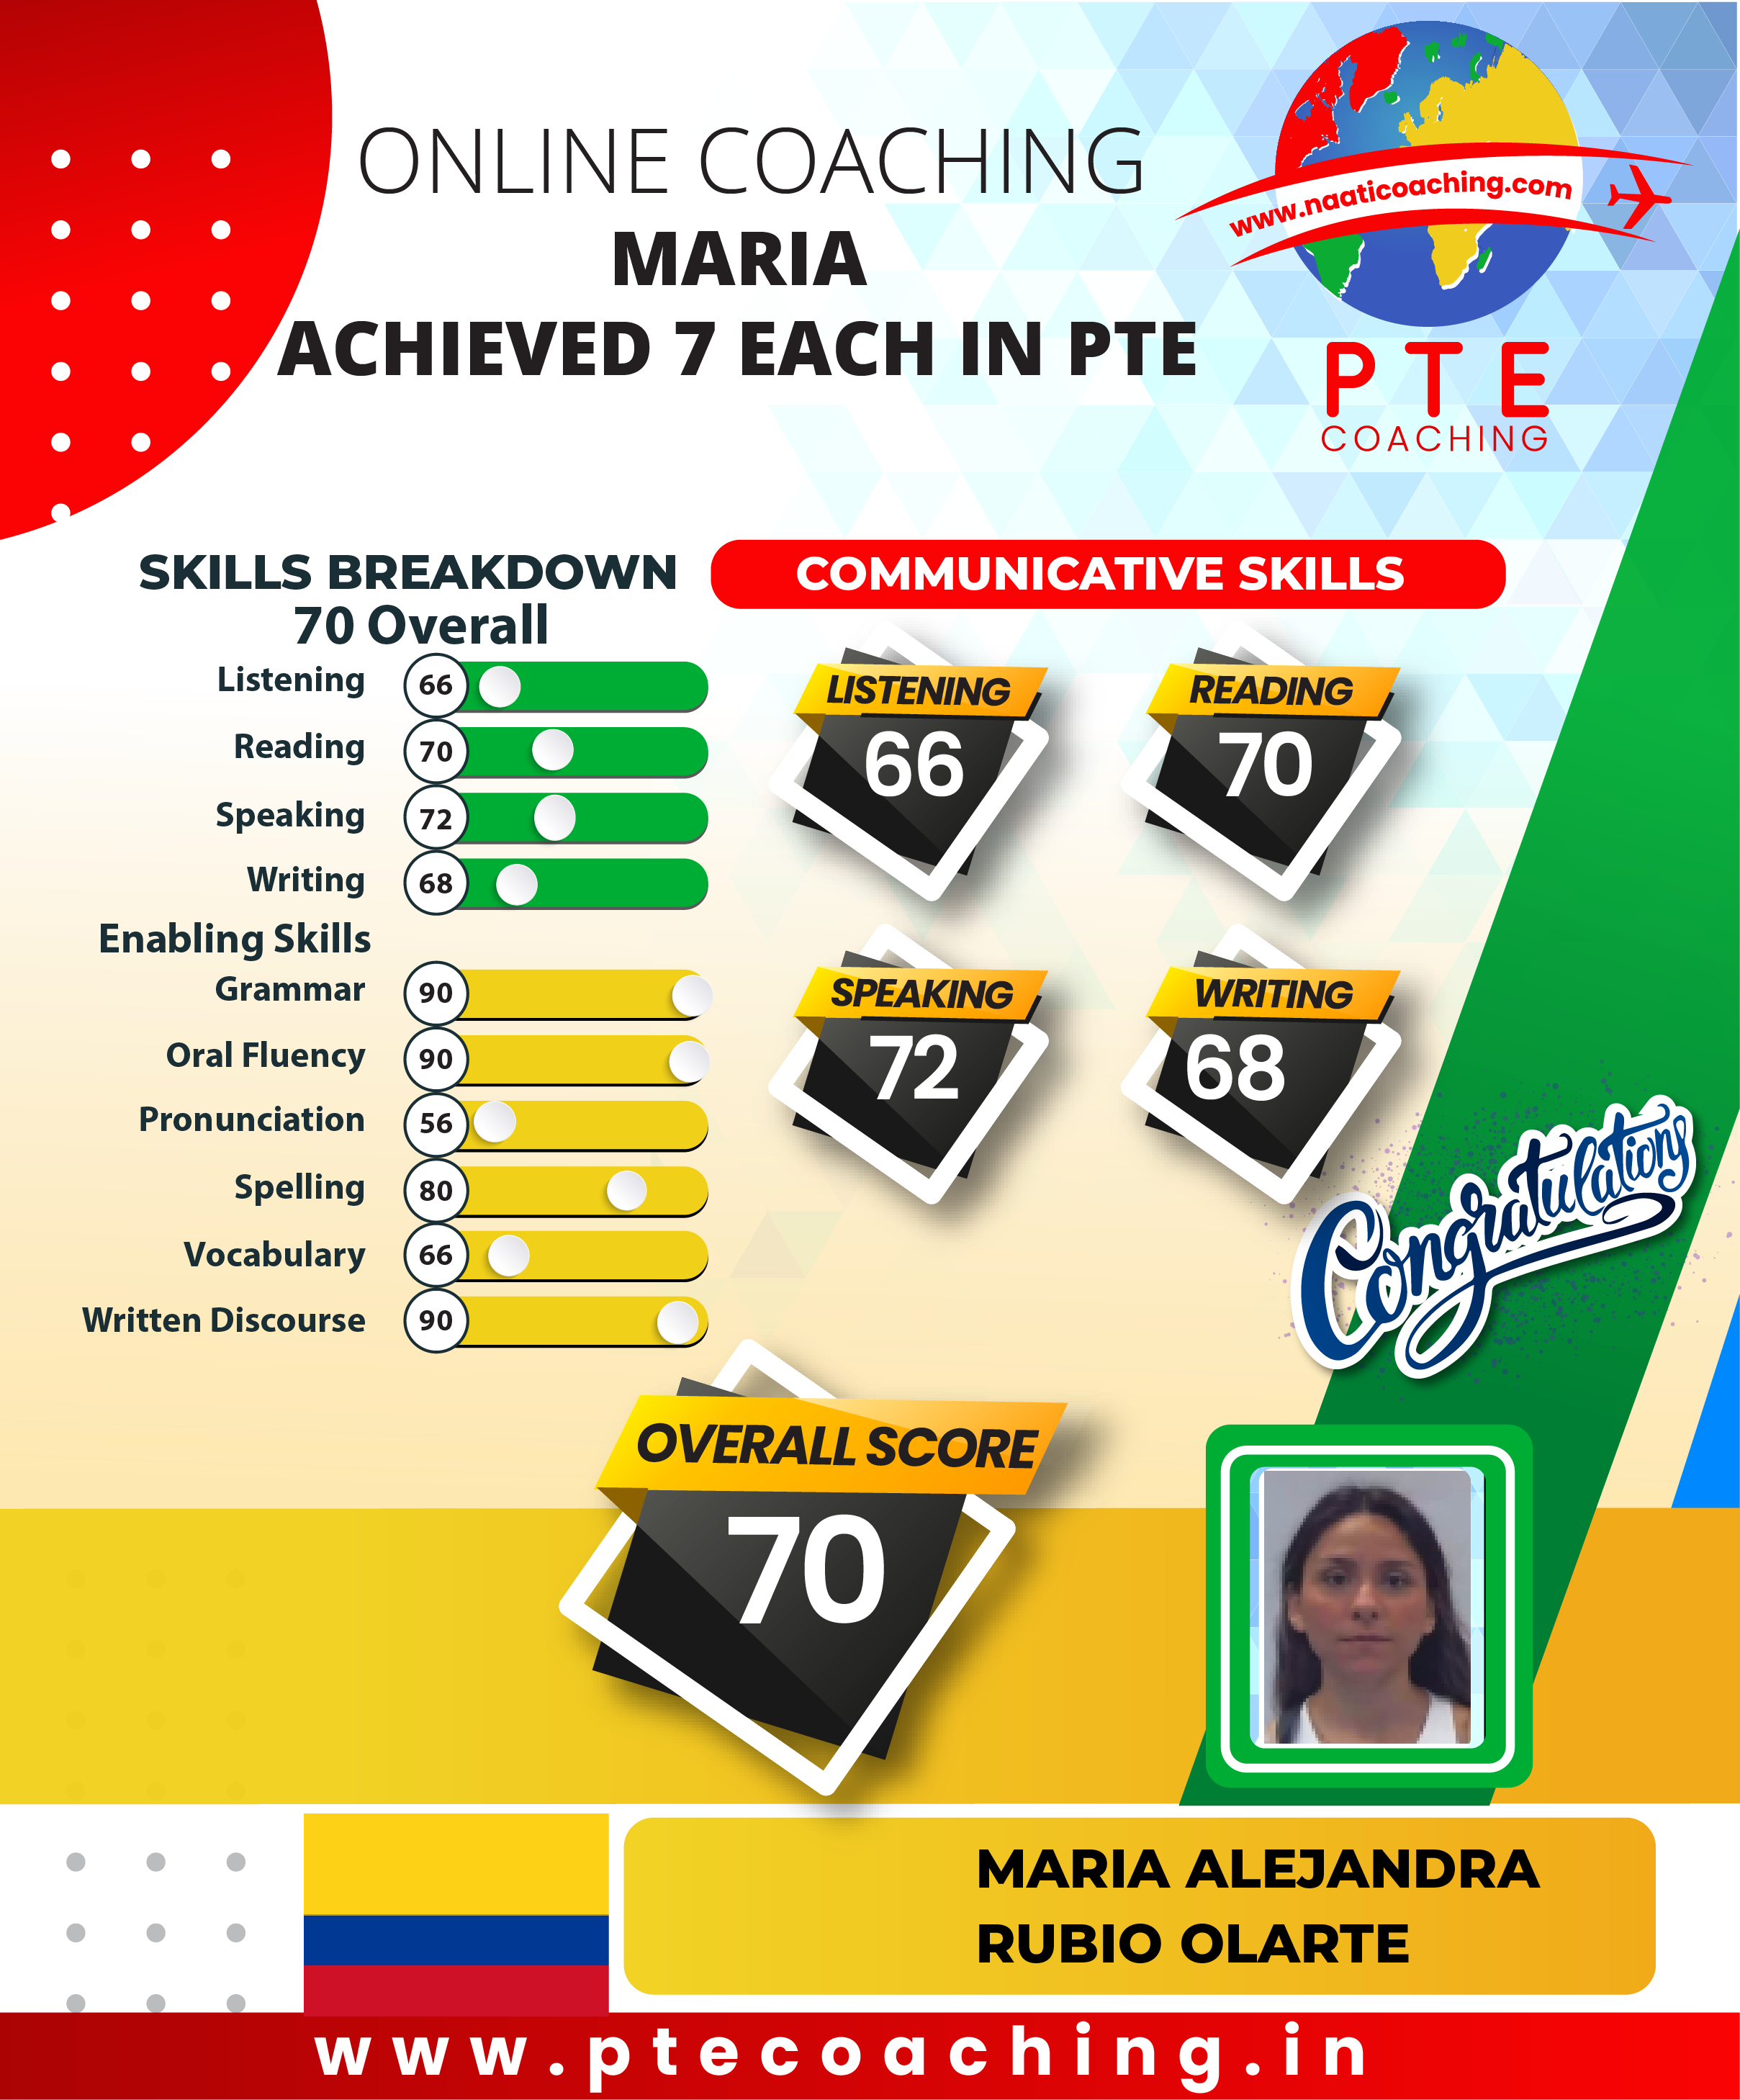 PTE Coaching Scorecard - Maria achieved 7 each in PTE